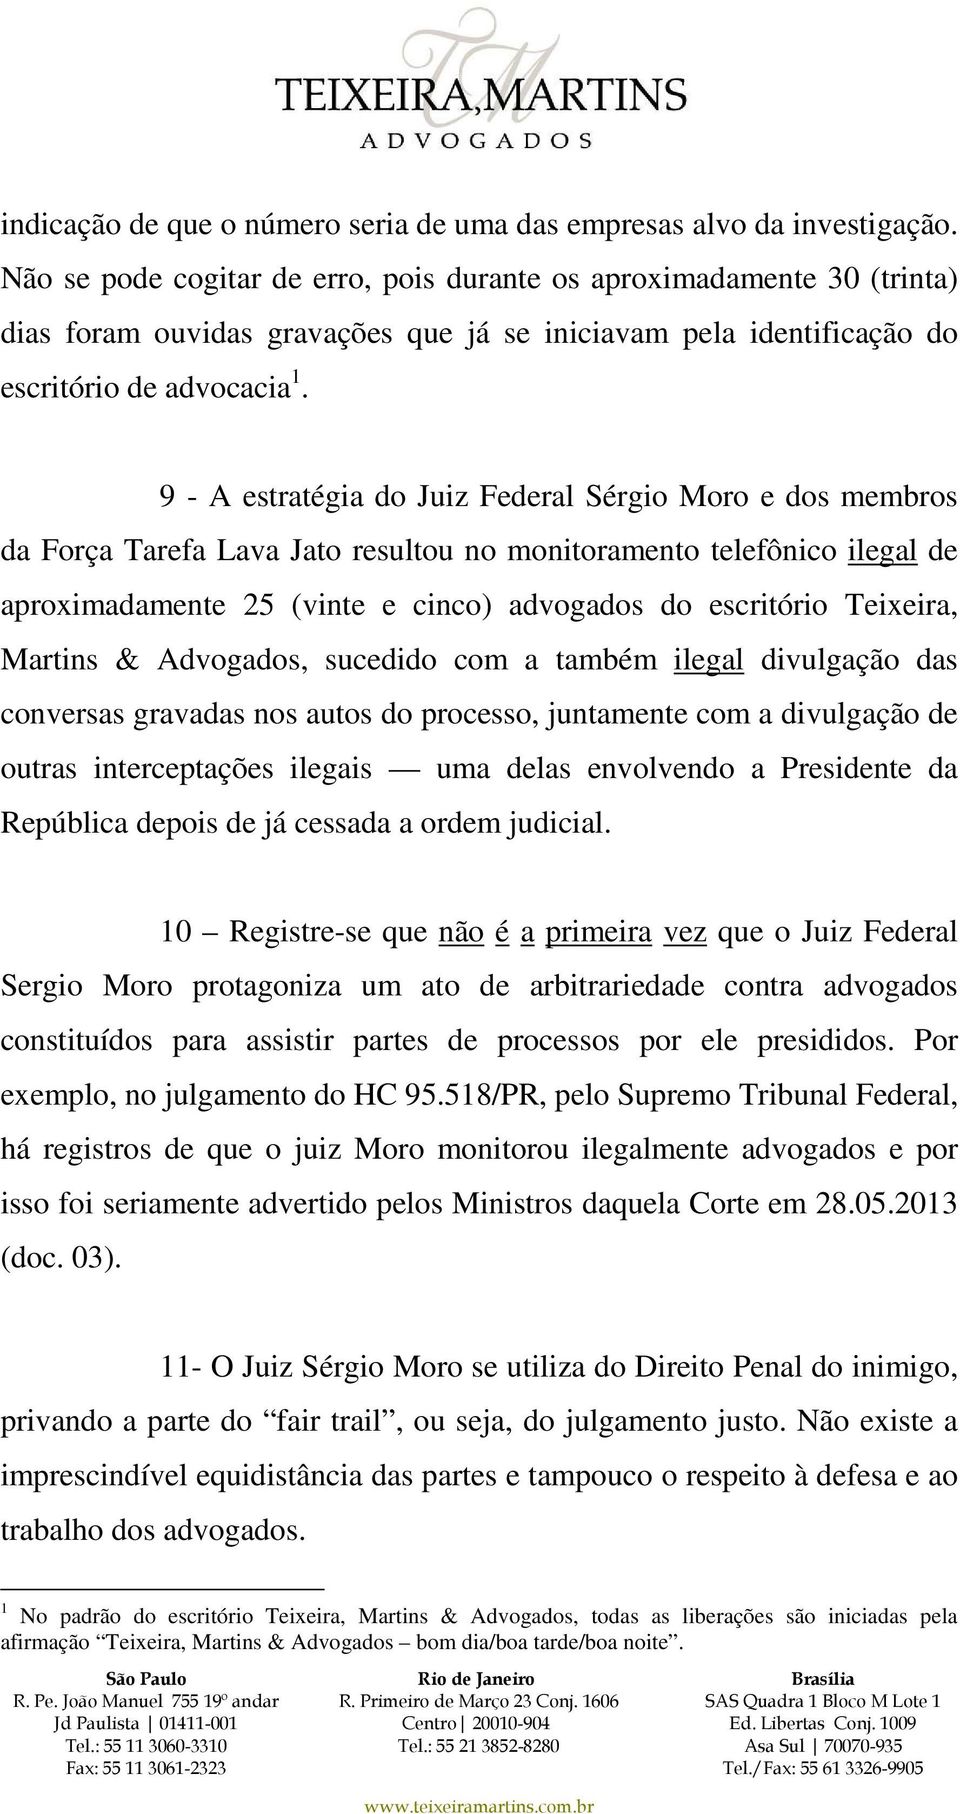 9 - A estratégia do Juiz Federal Sérgio Moro e dos membros da Força Tarefa Lava Jato resultou no monitoramento telefônico ilegal de aproximadamente 25 (vinte e cinco) advogados do escritório